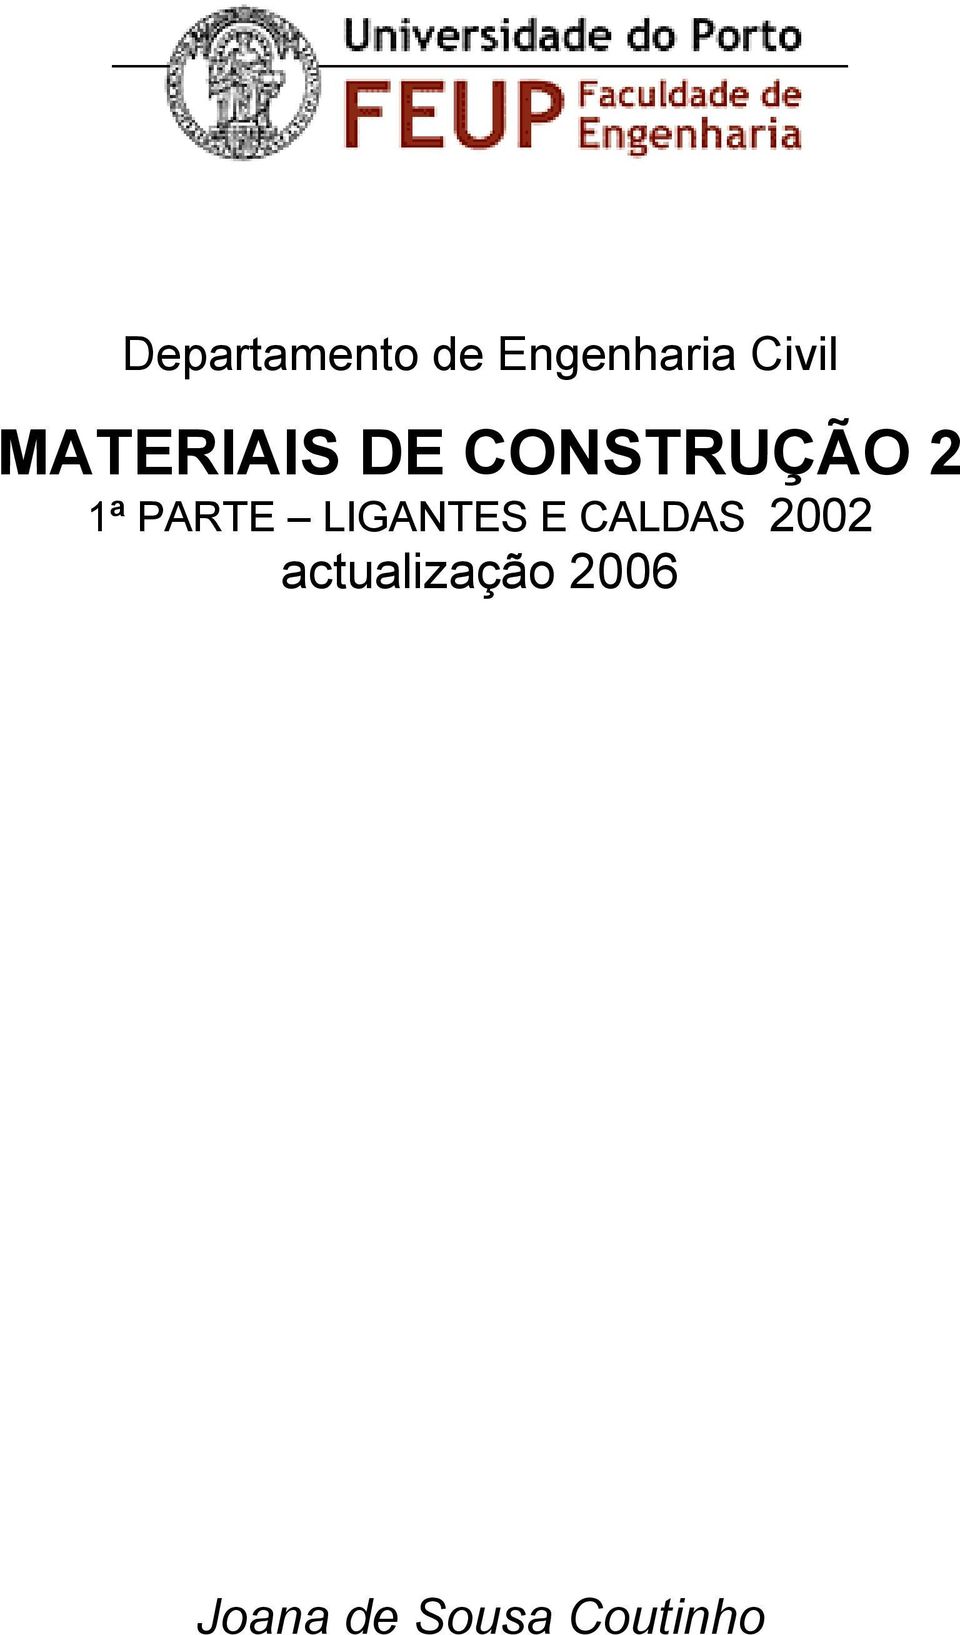 MATERIAIS DE CONSTRUÇÃO 2